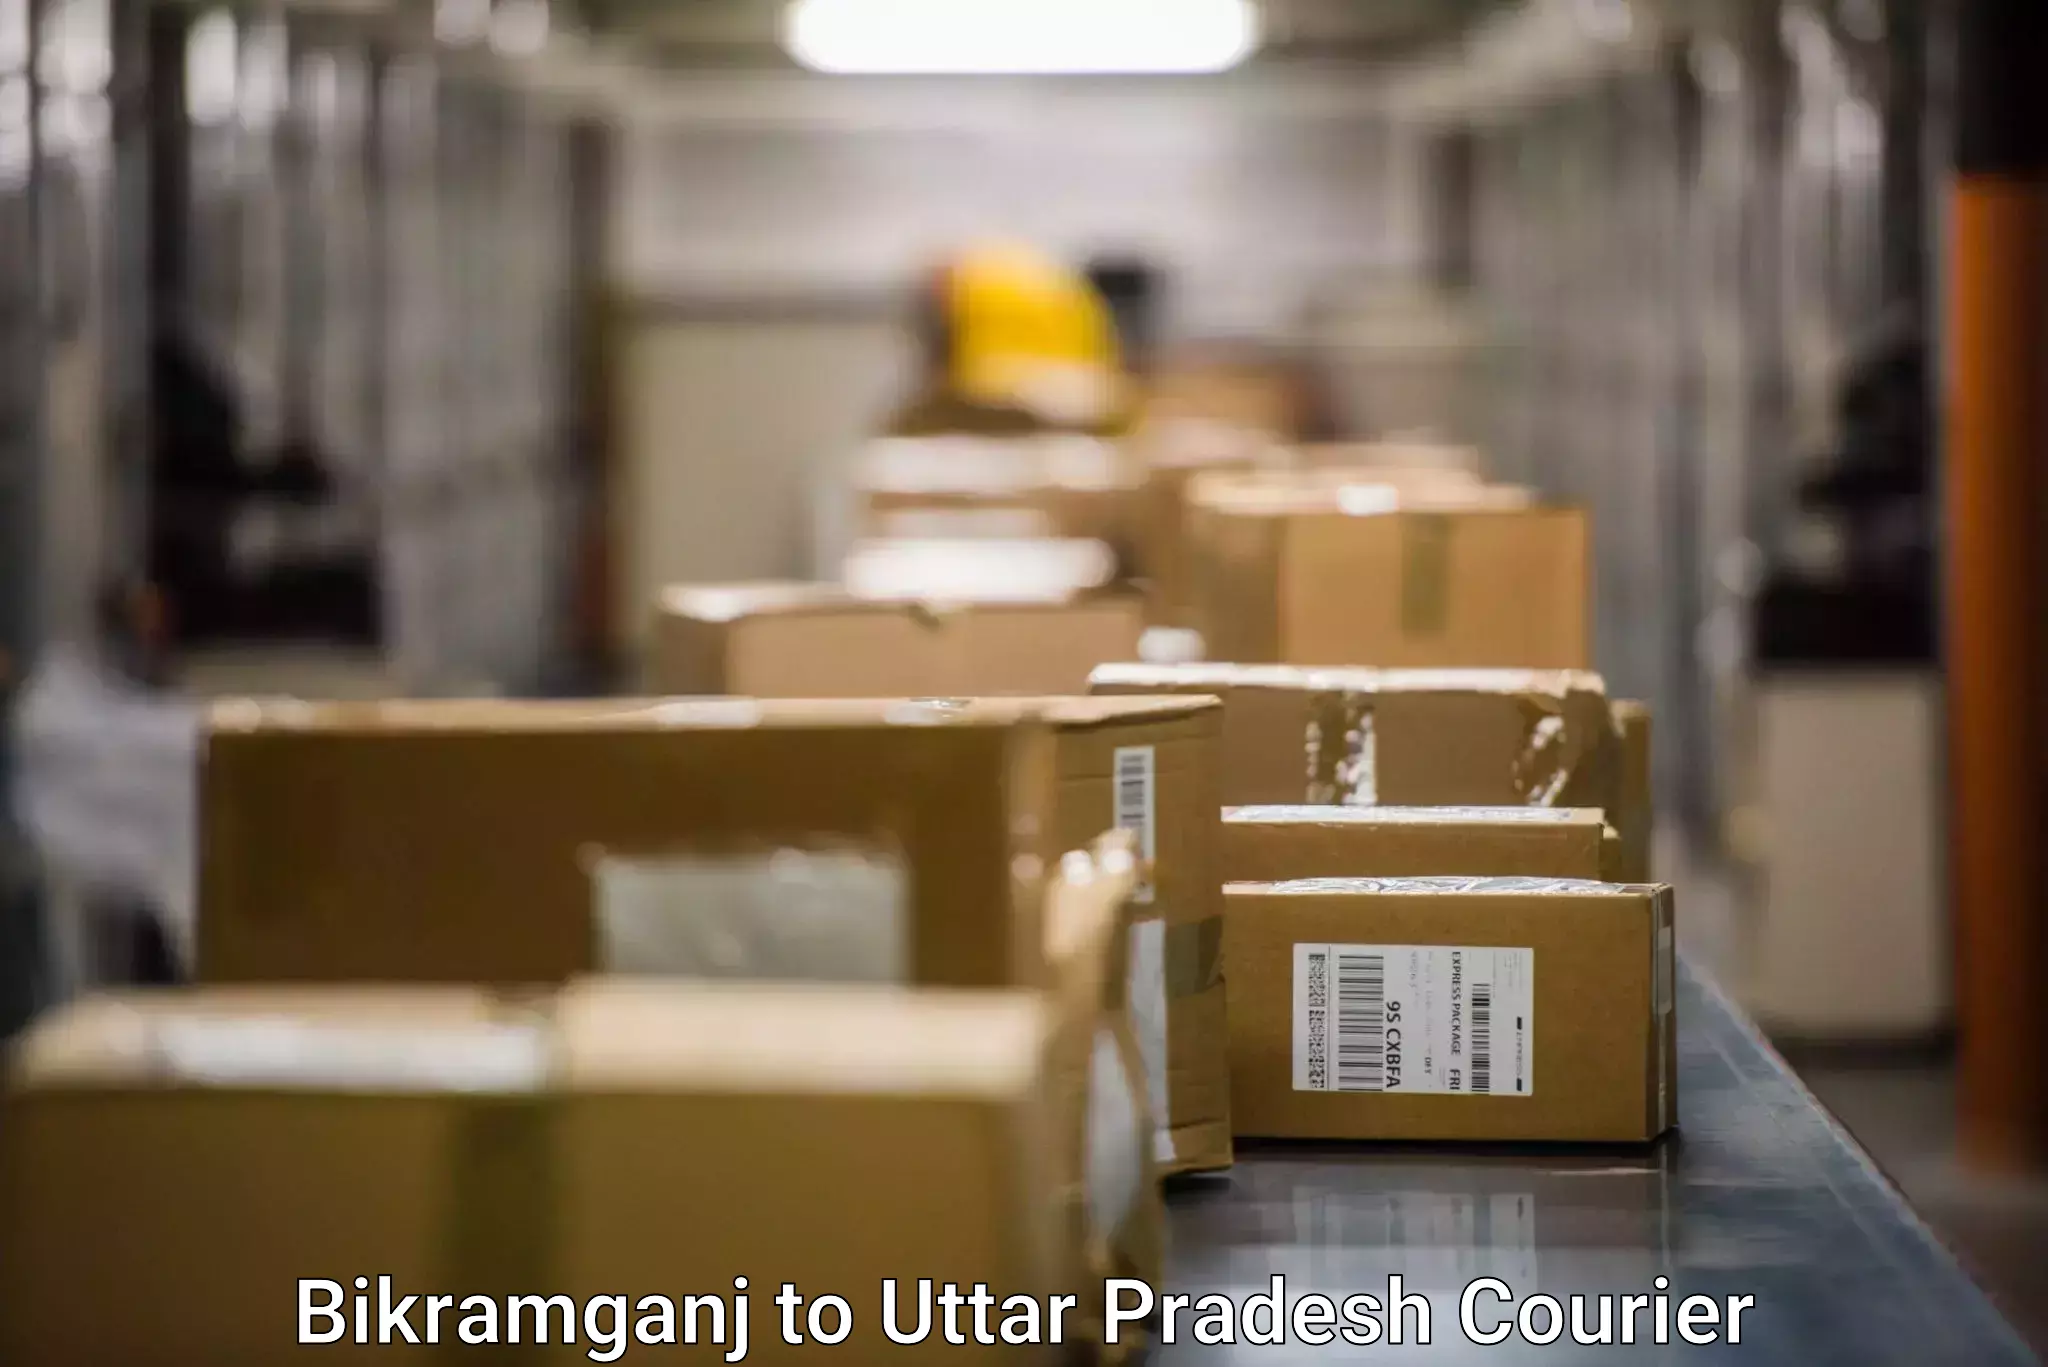 Modern delivery methods Bikramganj to Anupshahar